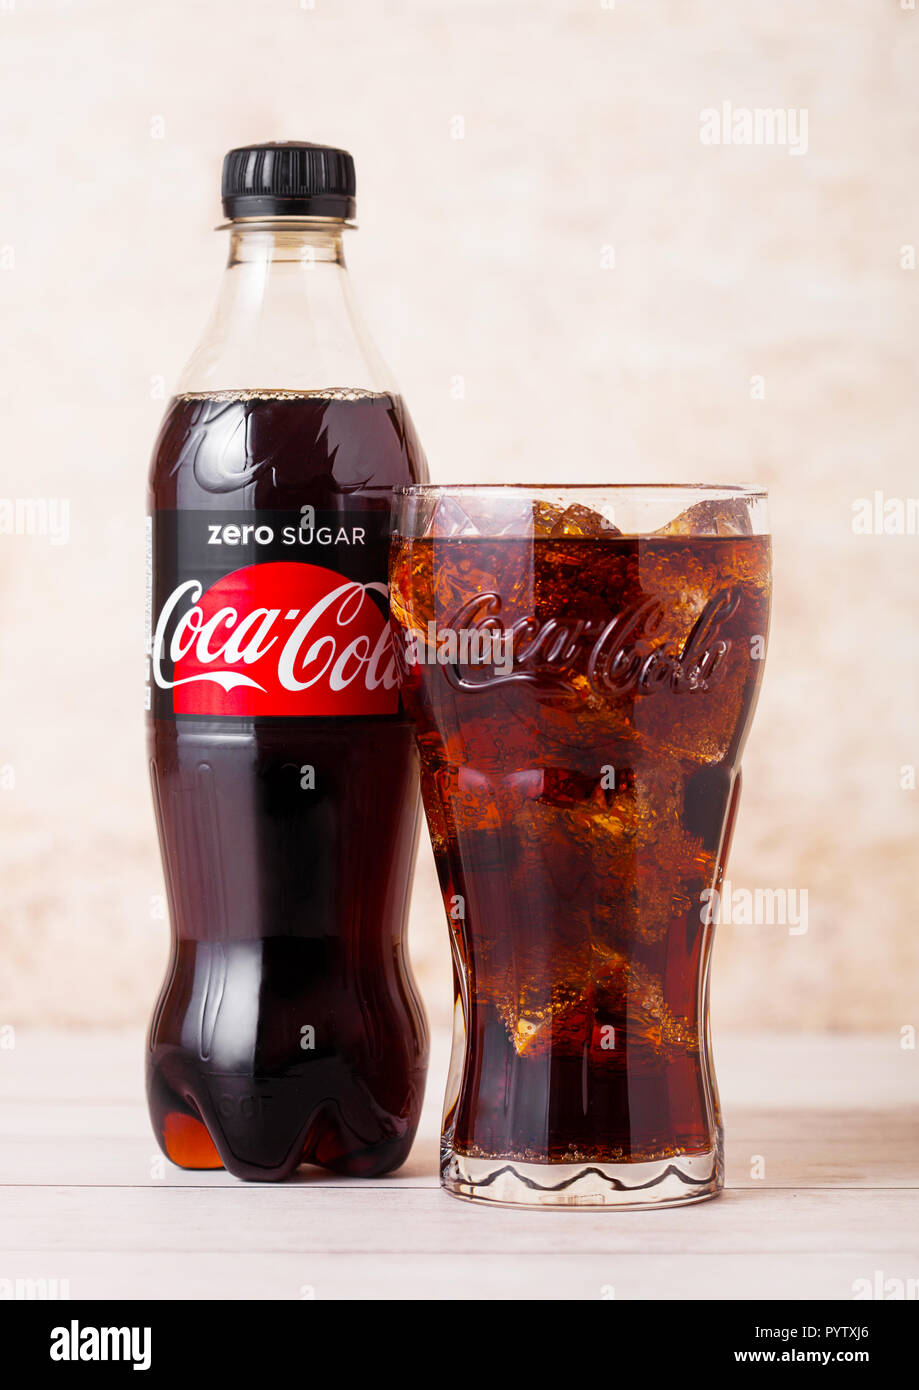 LONDON, UK - August 03, 2018: Plastikflasche und original Glas null Zucker Coca Cola Erfrischungsgetränke auf Holz. Beliebteste Getränk in der Welt. Stockfoto